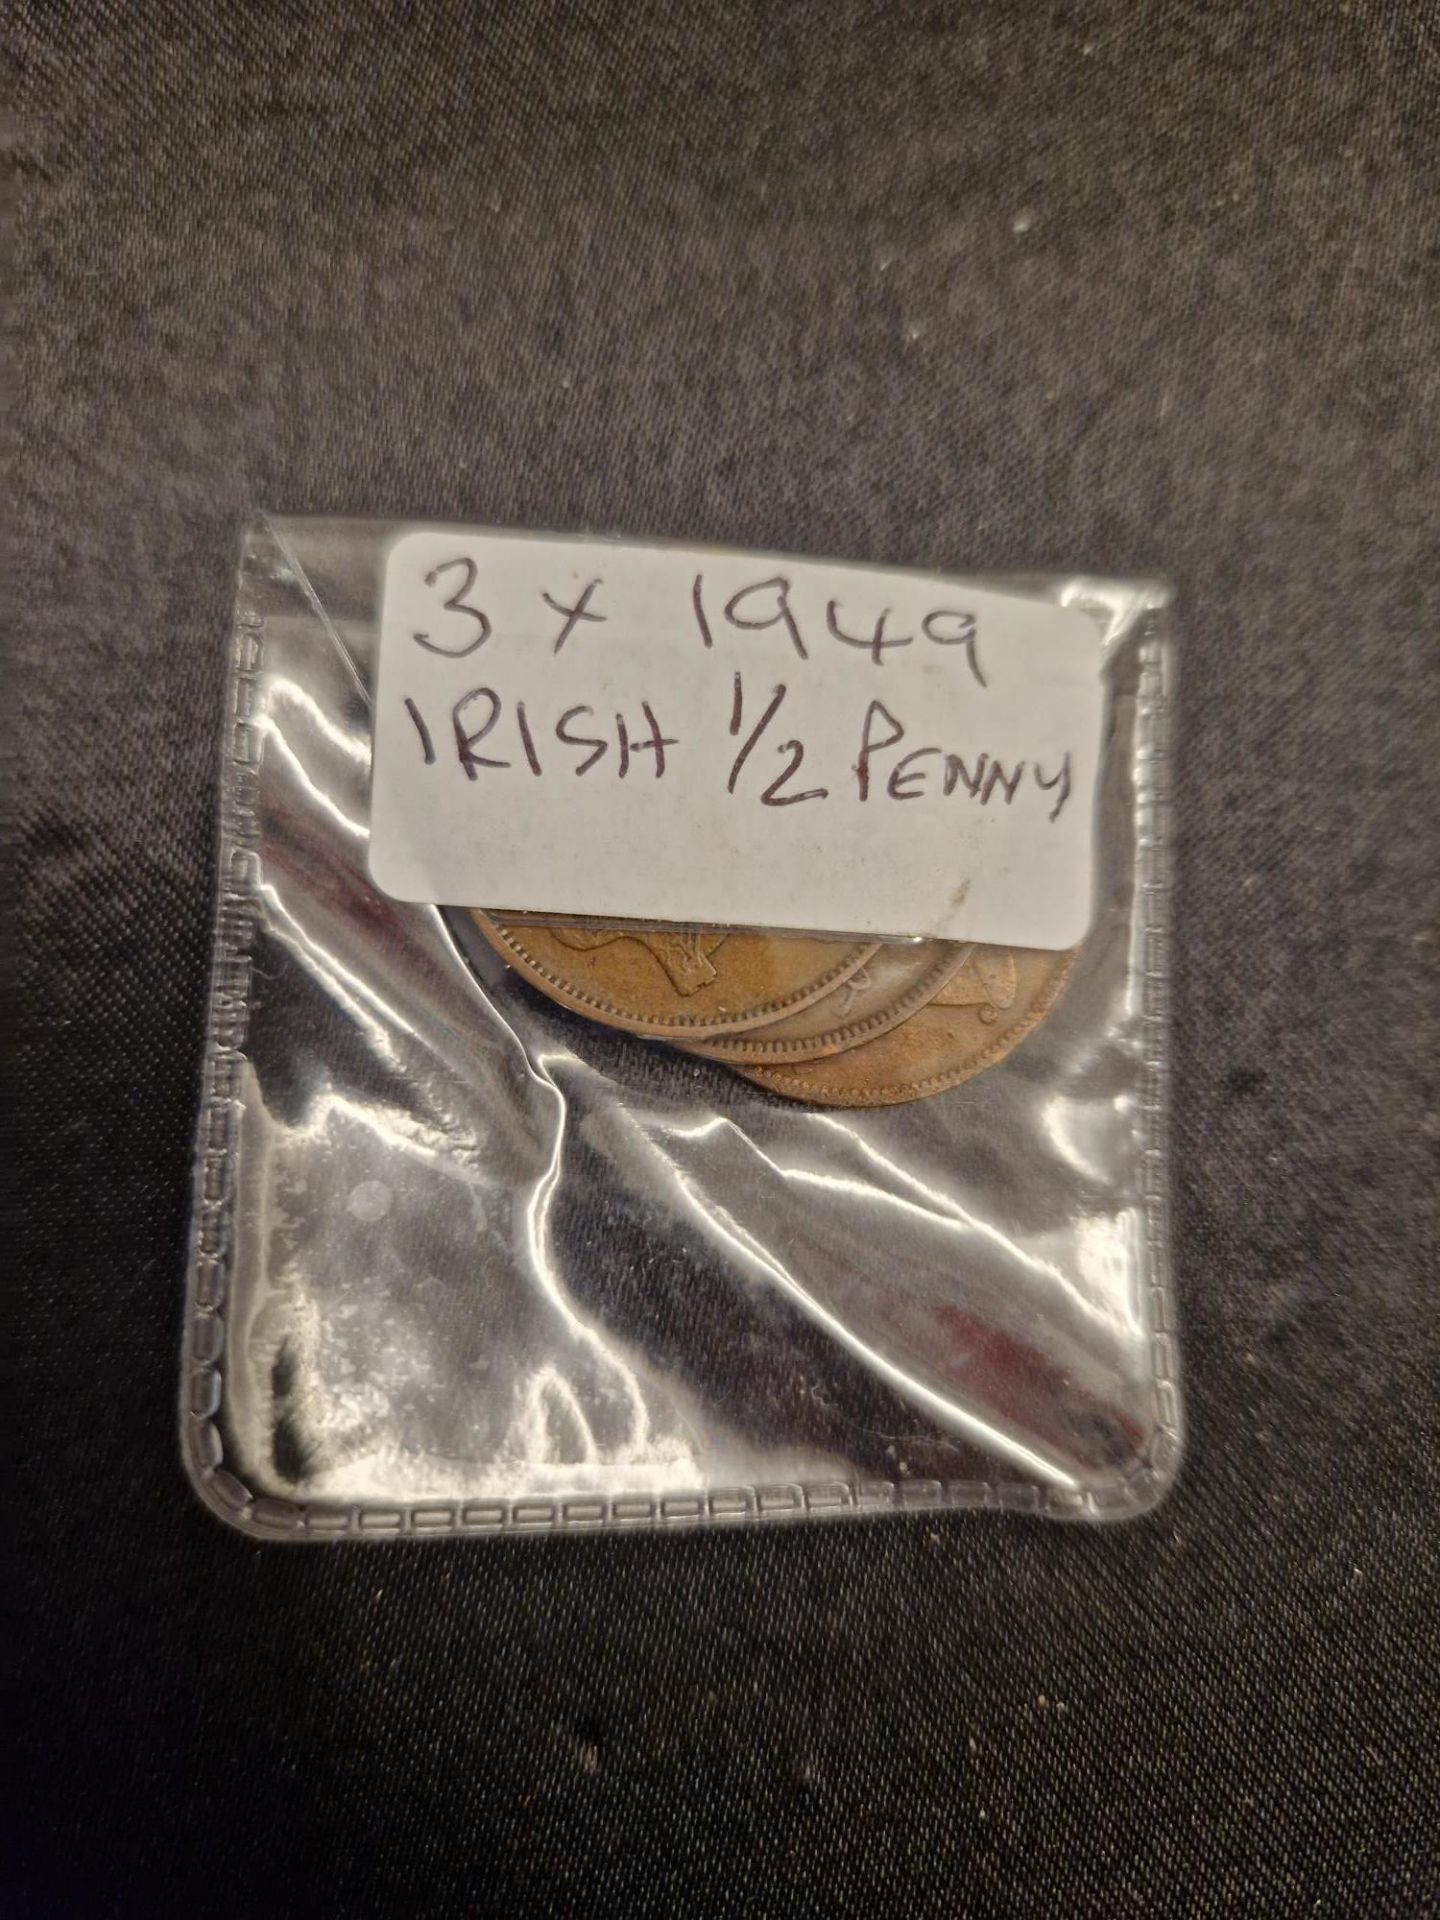 3 x 1949 irish 1/2 penny